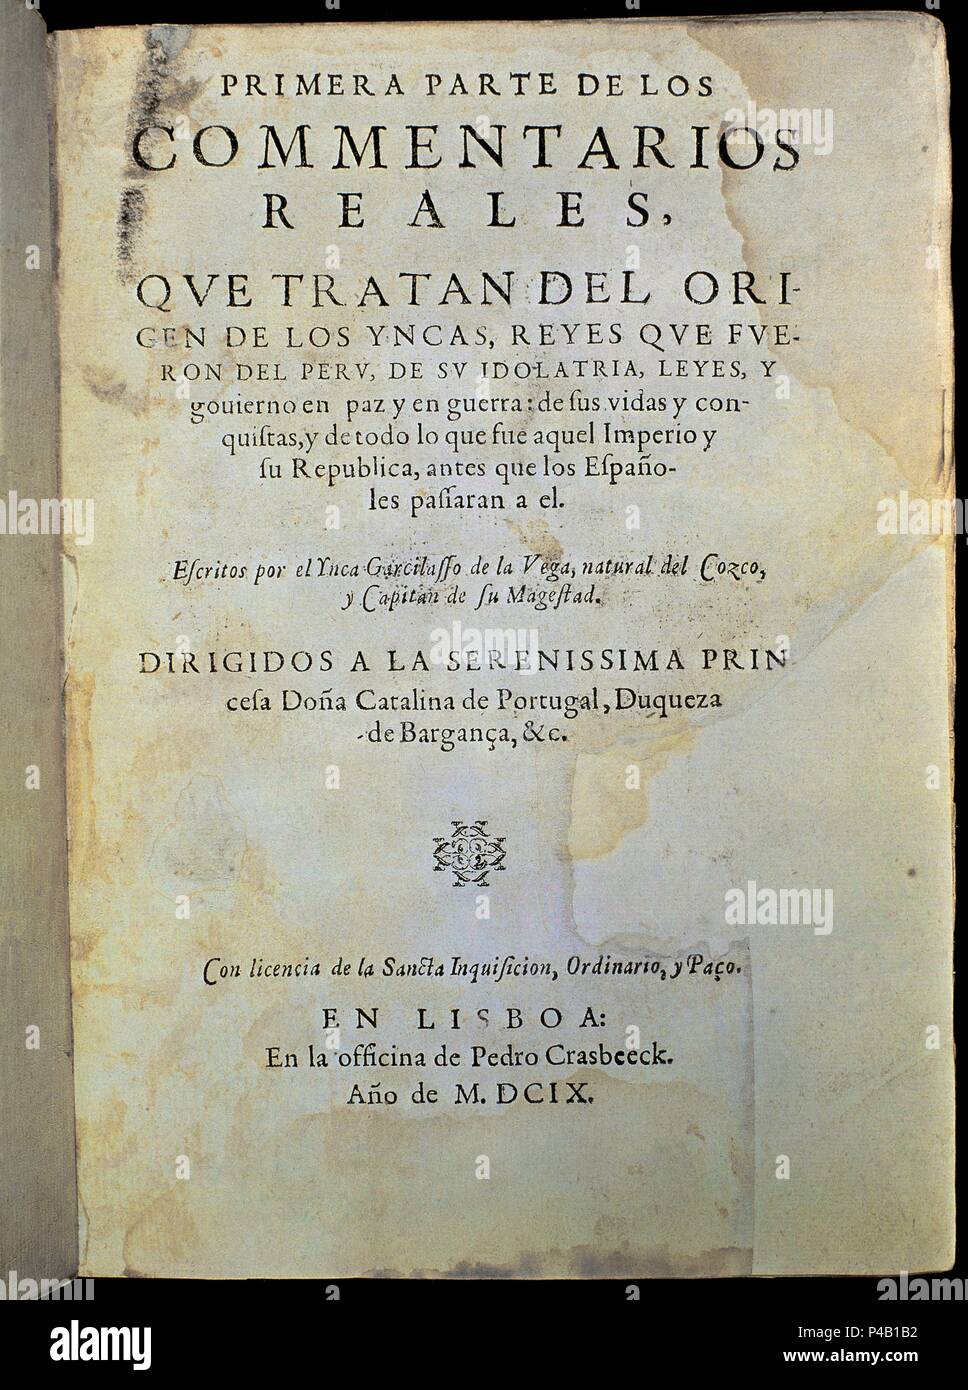 Royal Commentaries (Comentarios Reales,1609). Madrid, National Library (rare books section). Author: VEGA GARCILASO DE LA EL INCA. Location: BIBLIOTECA NACIONAL-COLECCION, MADRID, SPAIN. Stock Photo